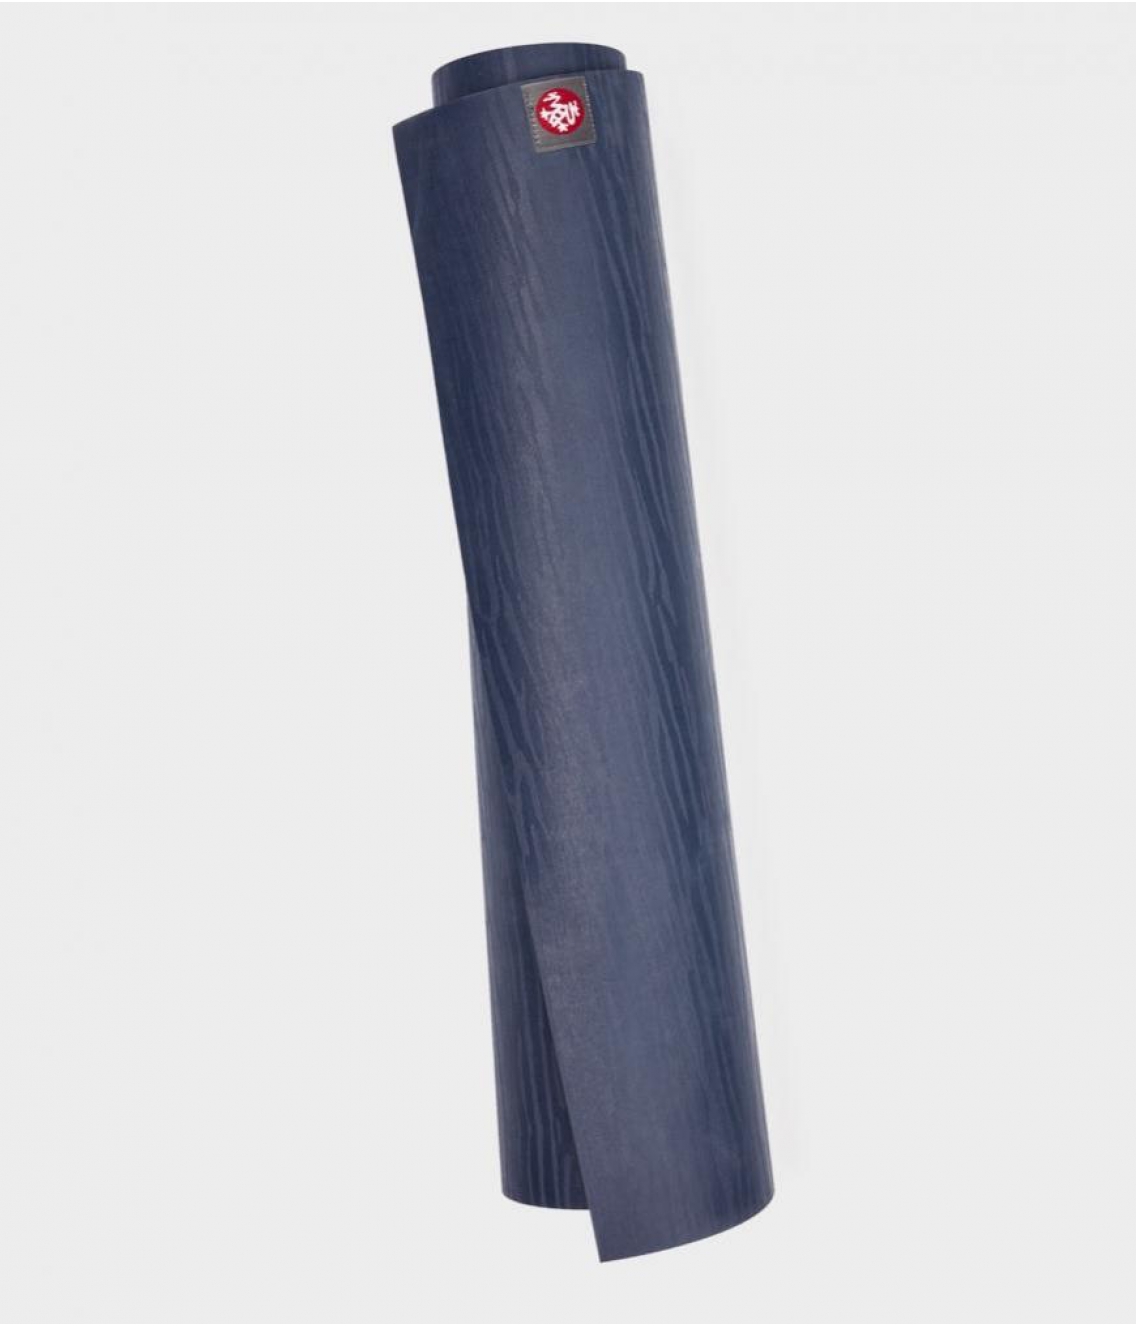 Профессиональный каучуковый коврик для йоги Manduka eKO 180*61*0,6 см - Midnight